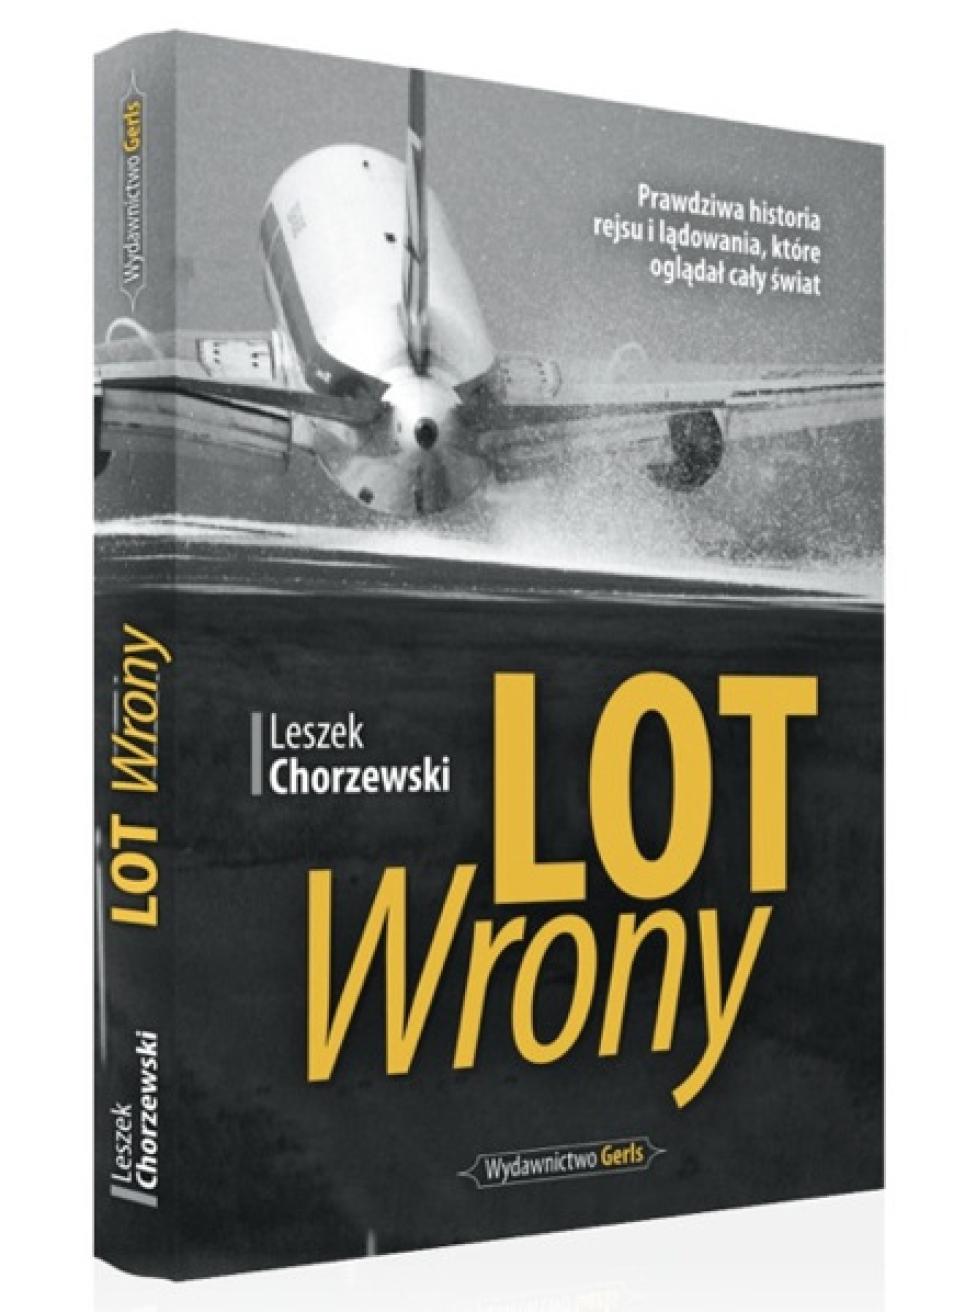 Lot Wrony - książka Leszka Chorzewskiego